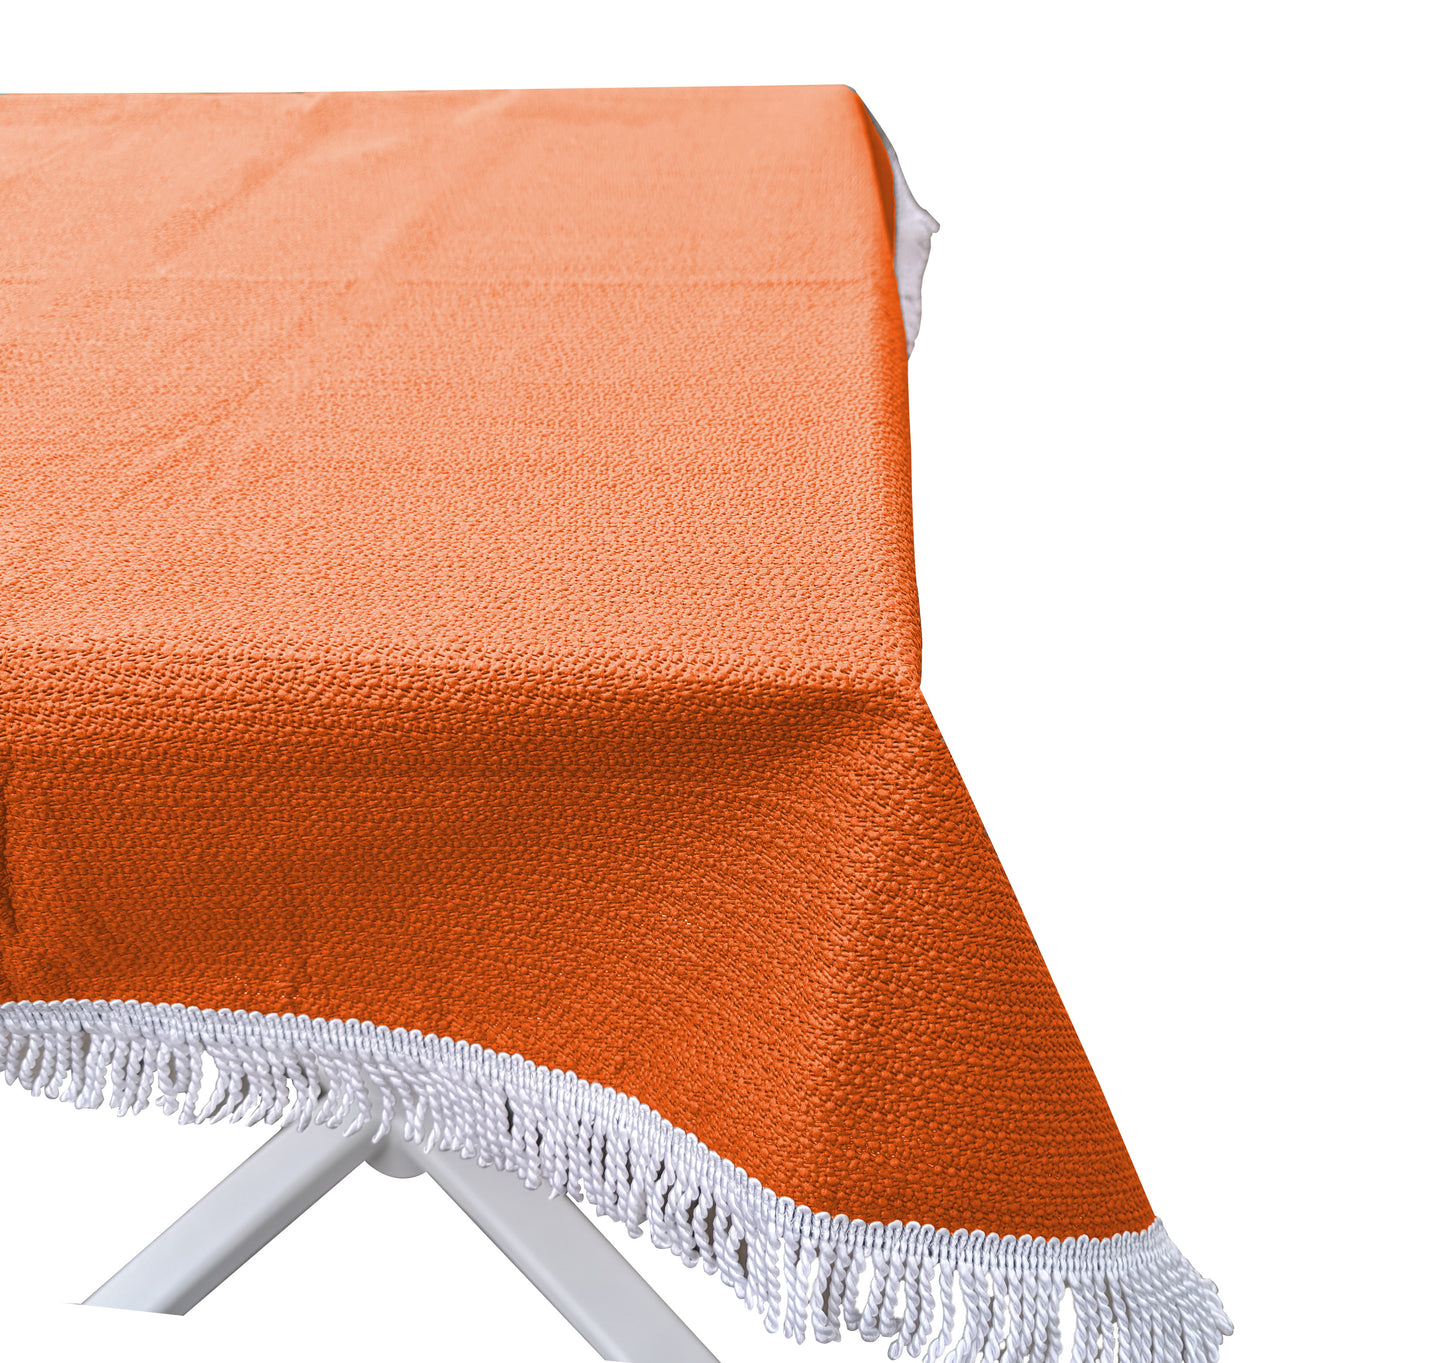 Gartentischdecke 160cm Rund Orange  Weichschaum Witterungsbeständig  Wetterfest geschäumt  Pflegeleicht  abwaschbar